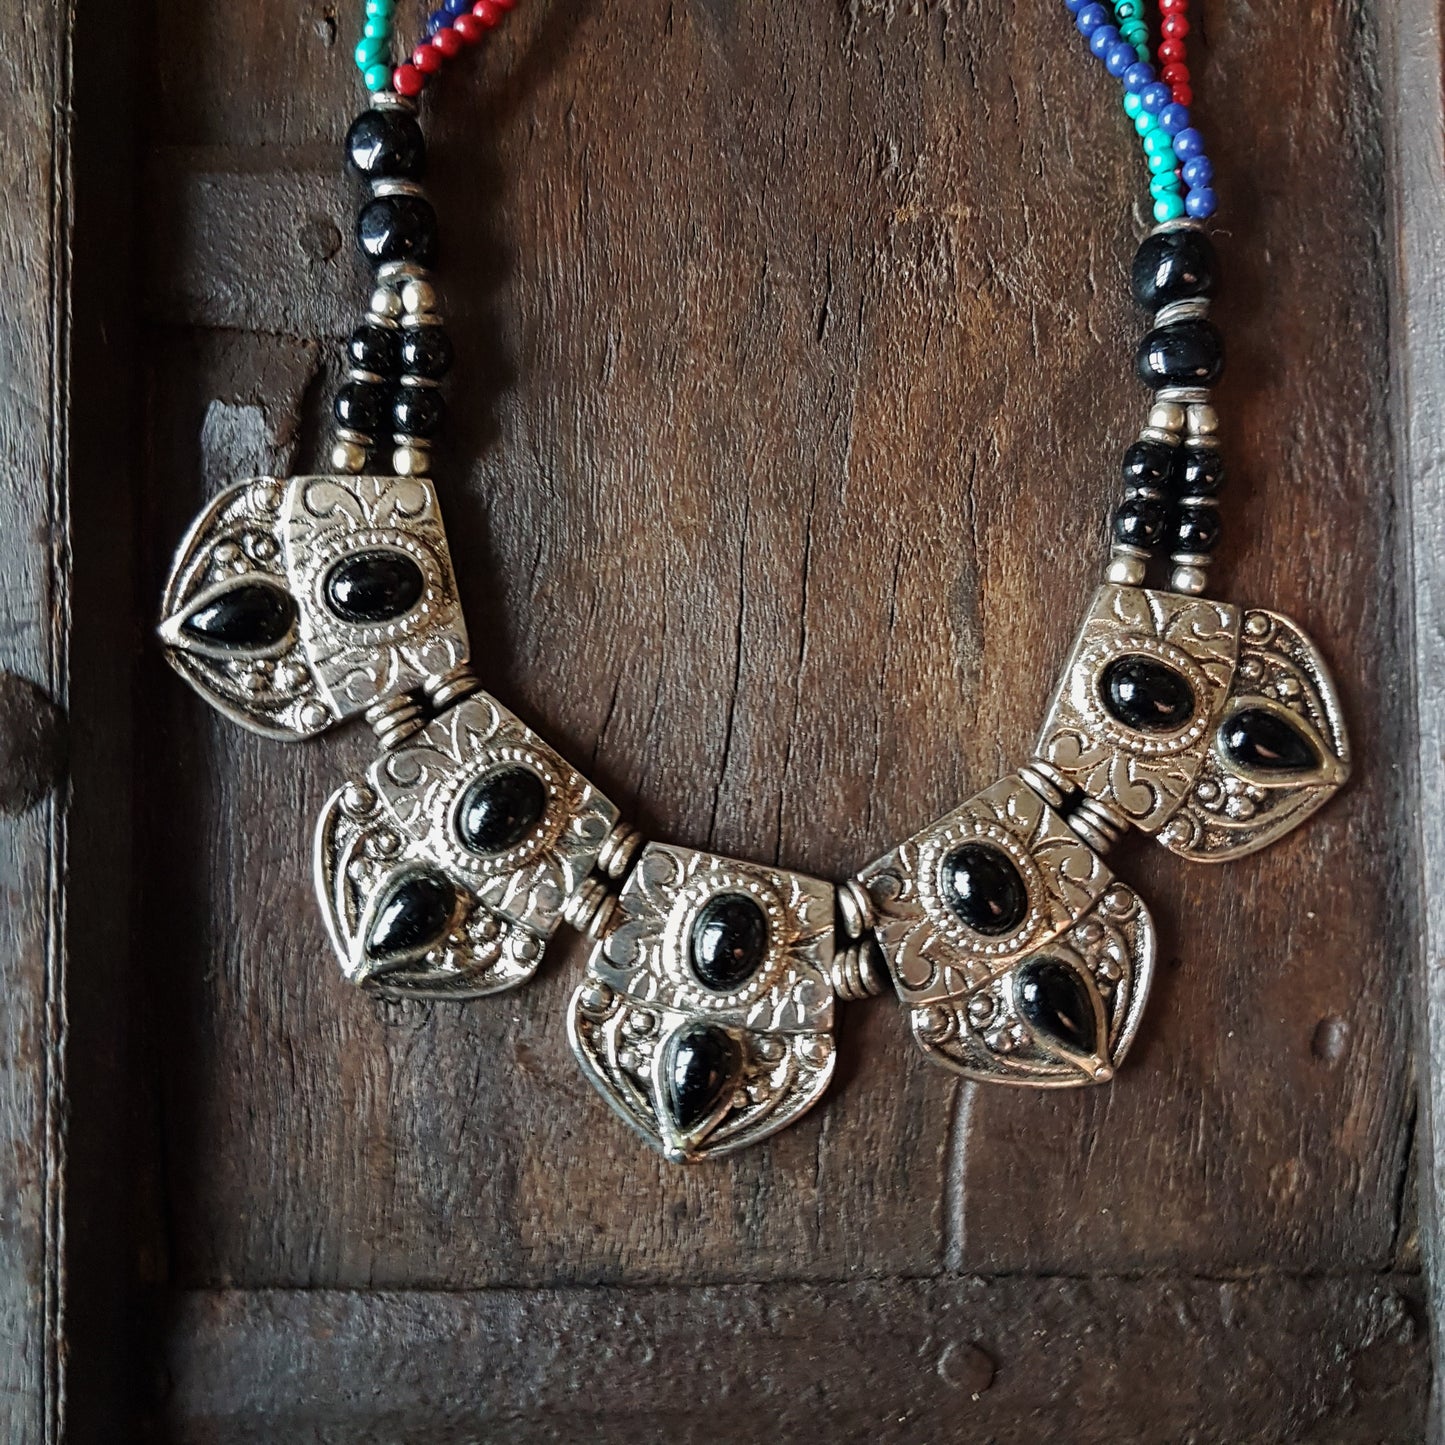 Collier indo-tibétain dramatique avec des pierres d'onyx noires incrustées sur du métal argenté gaufré. Finition corde perlée multicolore.